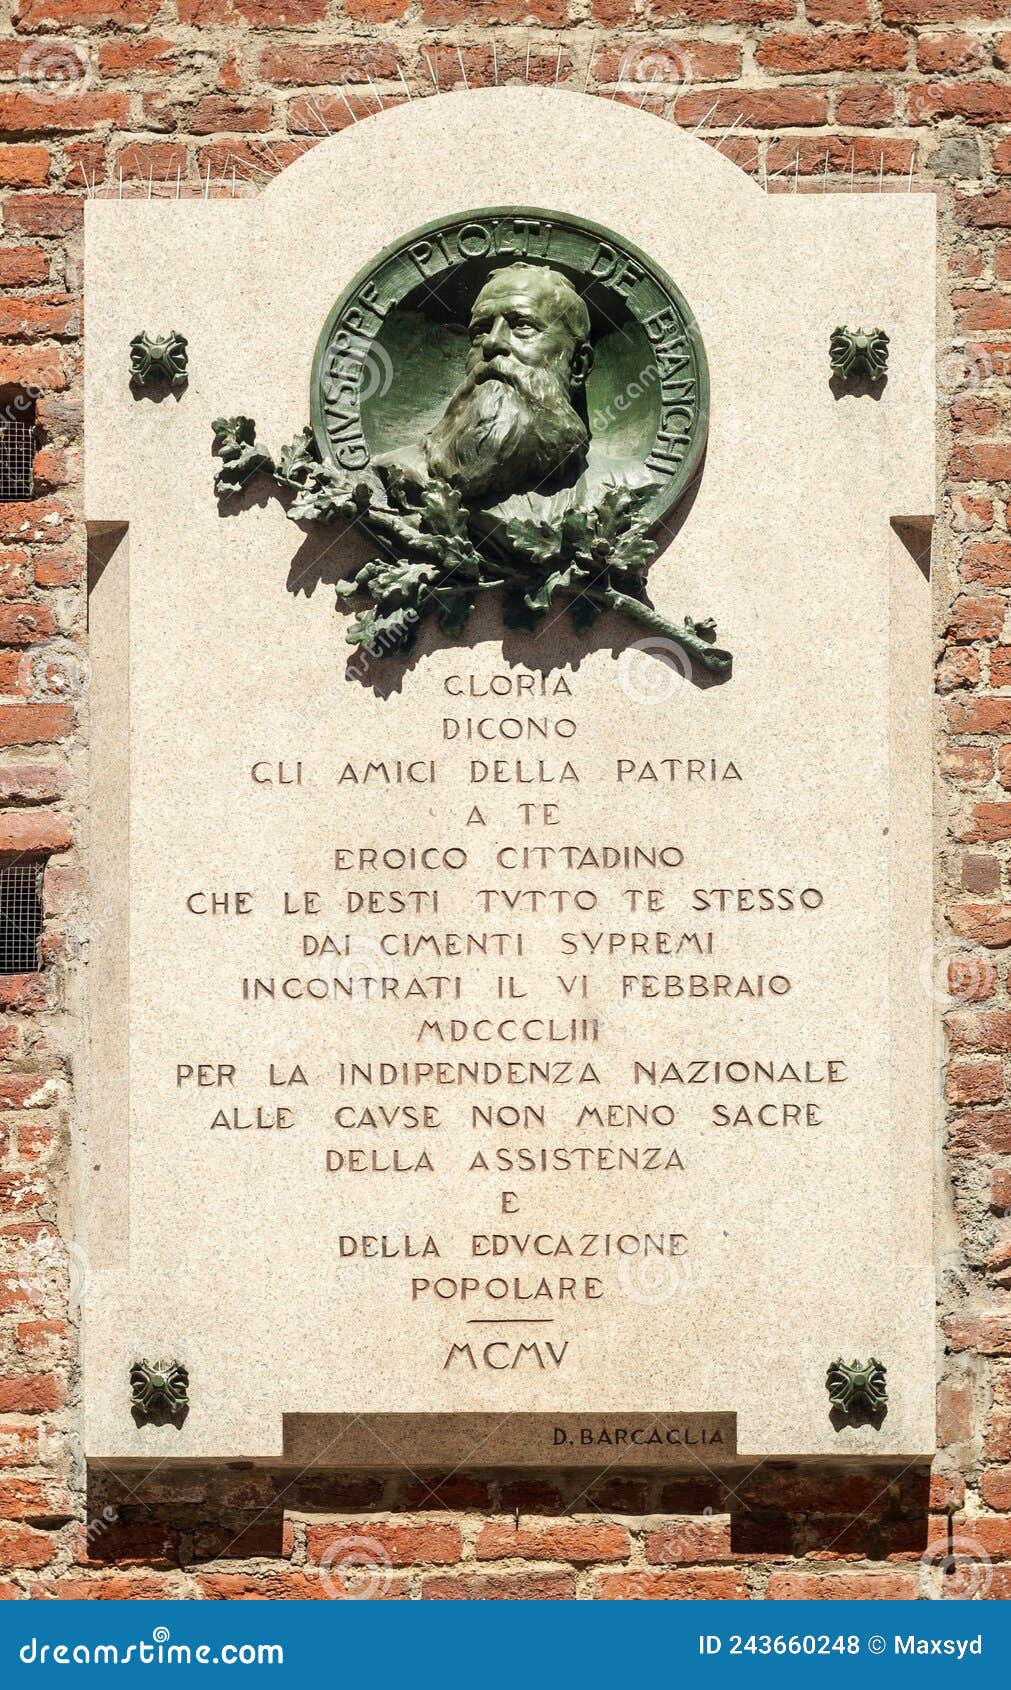 memorial plaque of giuseppe piolti de bianchi in milan, italy